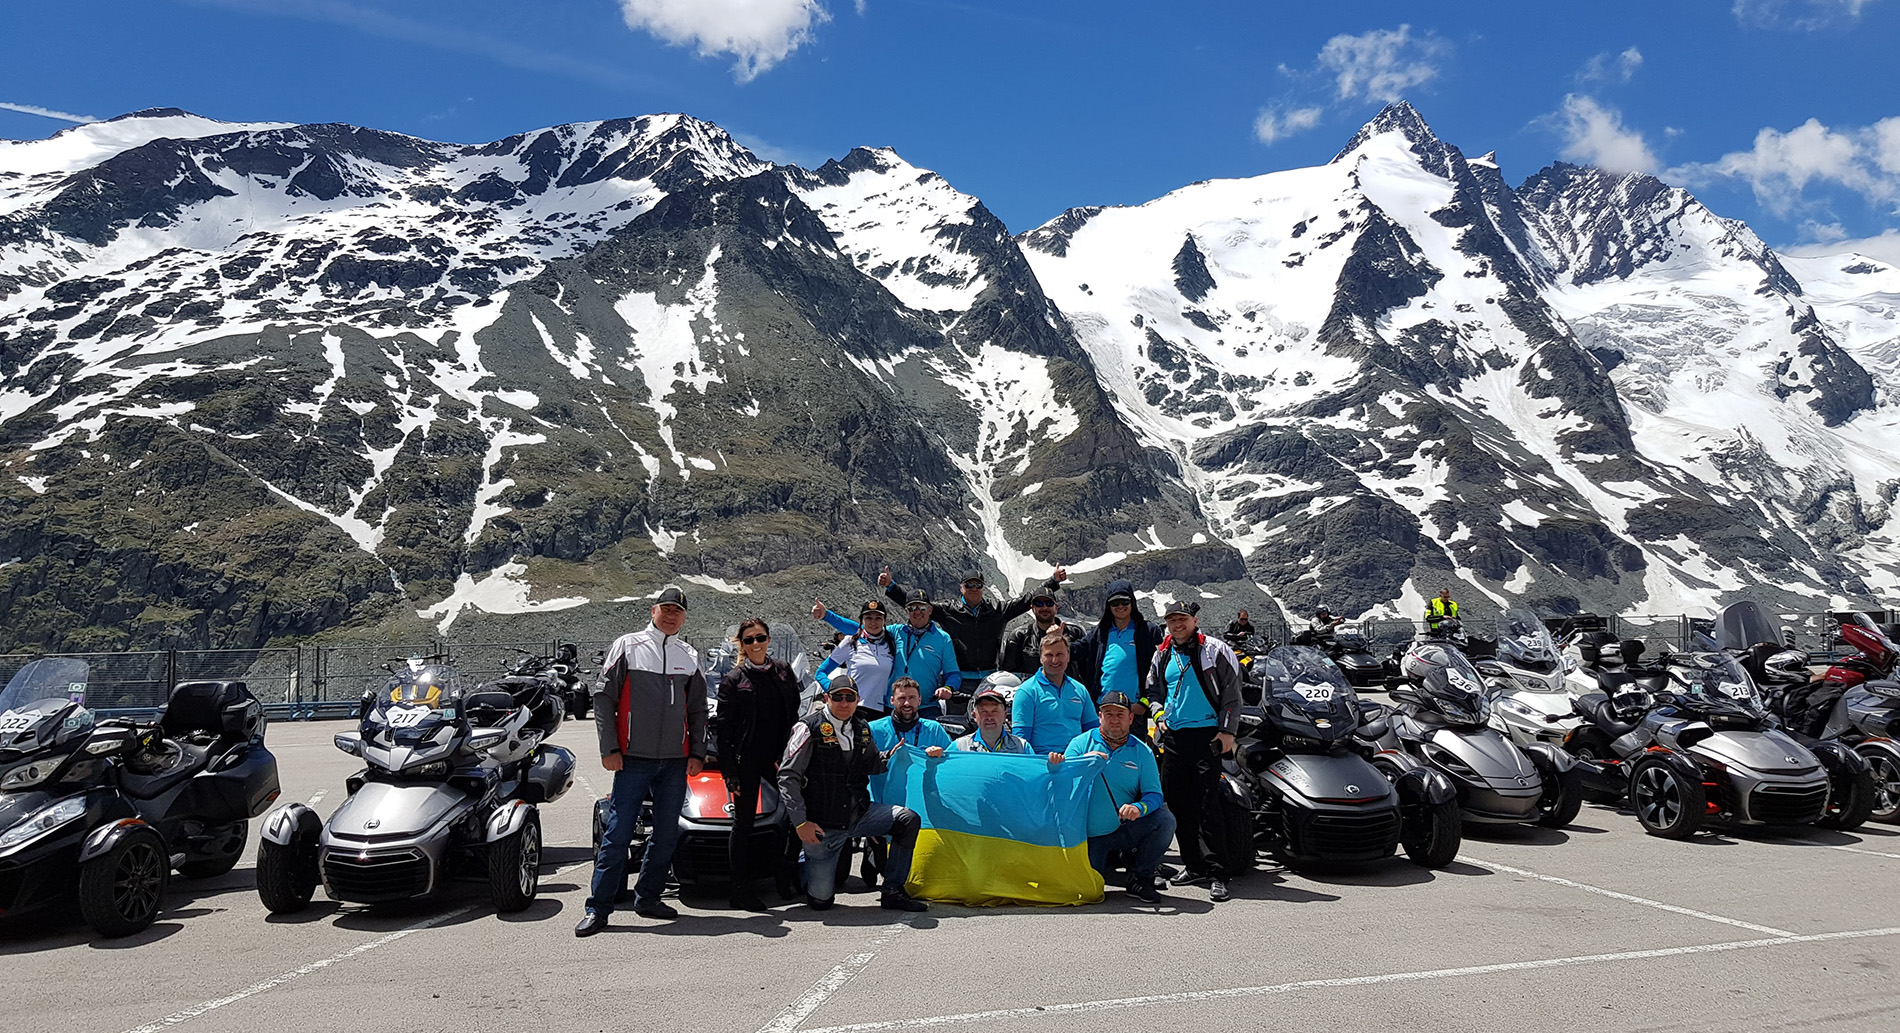 8-11 июня 2017 состоялось интересное событие – покорение альпийской вершины Гроссглокнер (Австрия) на родстерах Can-Am Spyder.